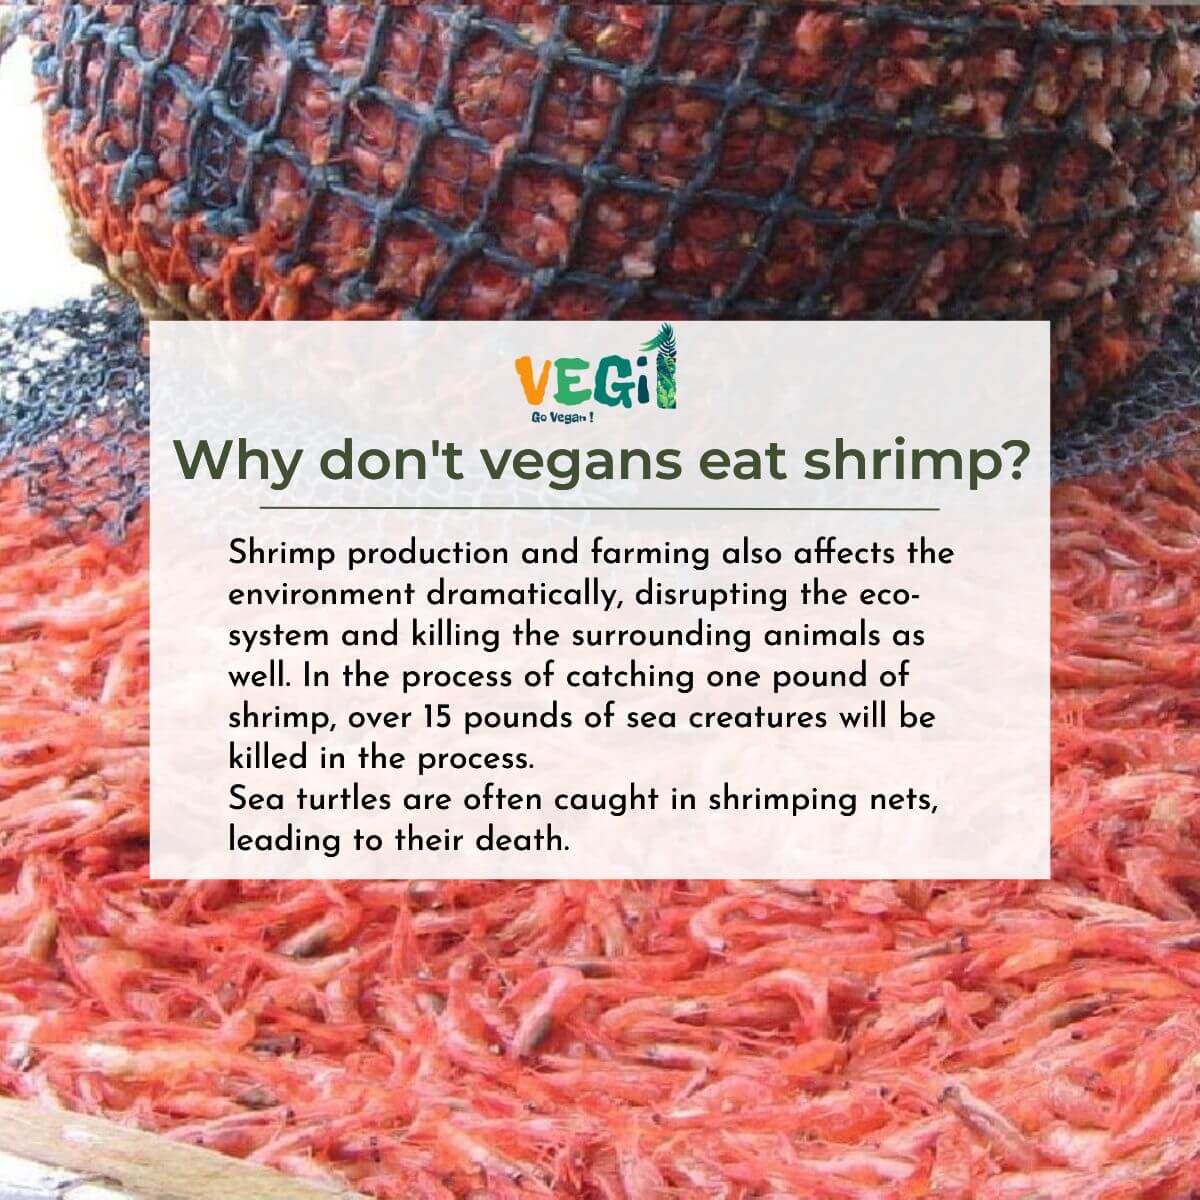 Why don't vegans eat shrimp?